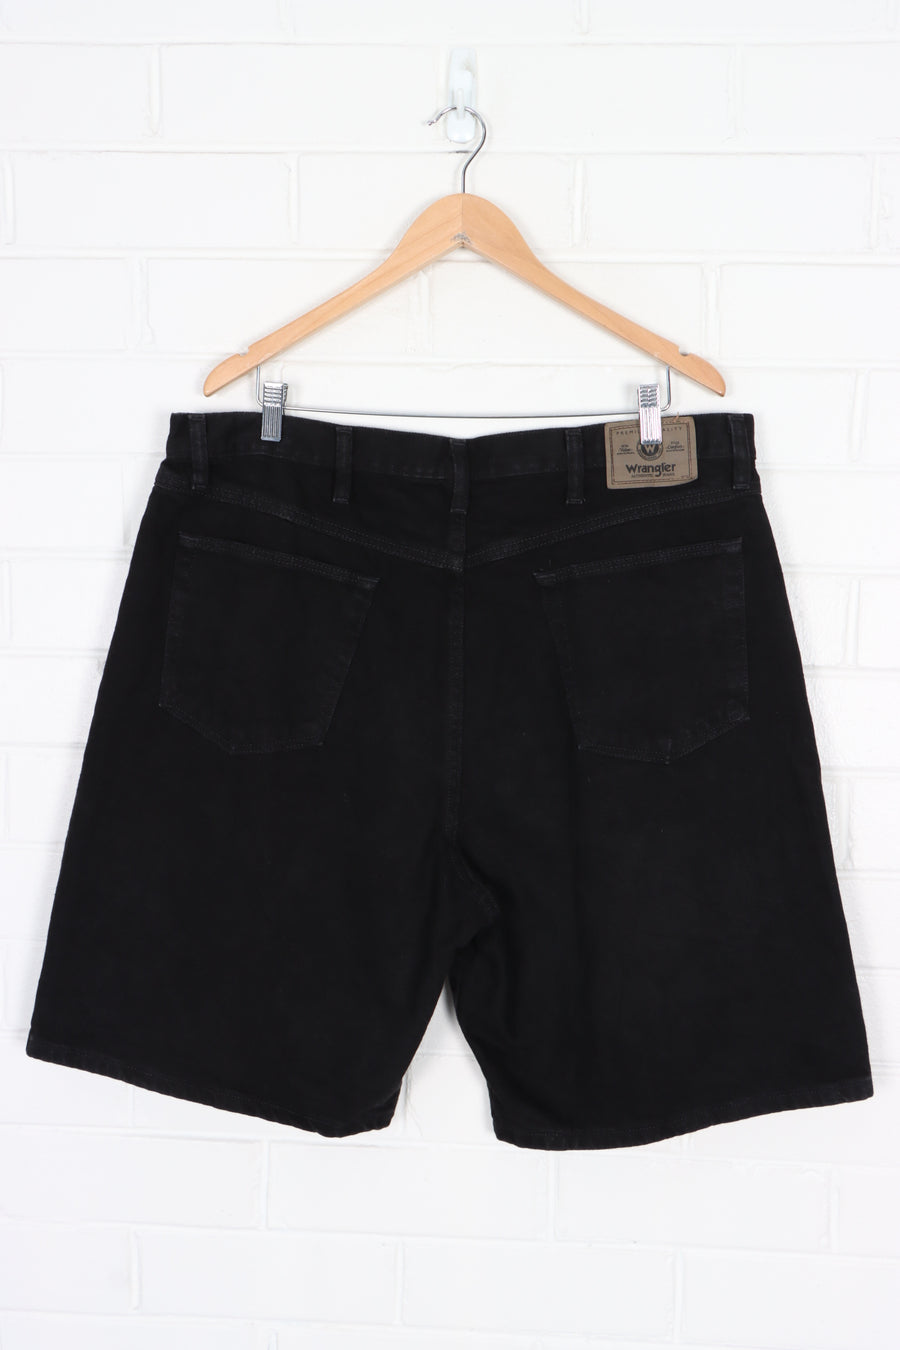 WRANGLER Black Denim Jorts Shorts (40)